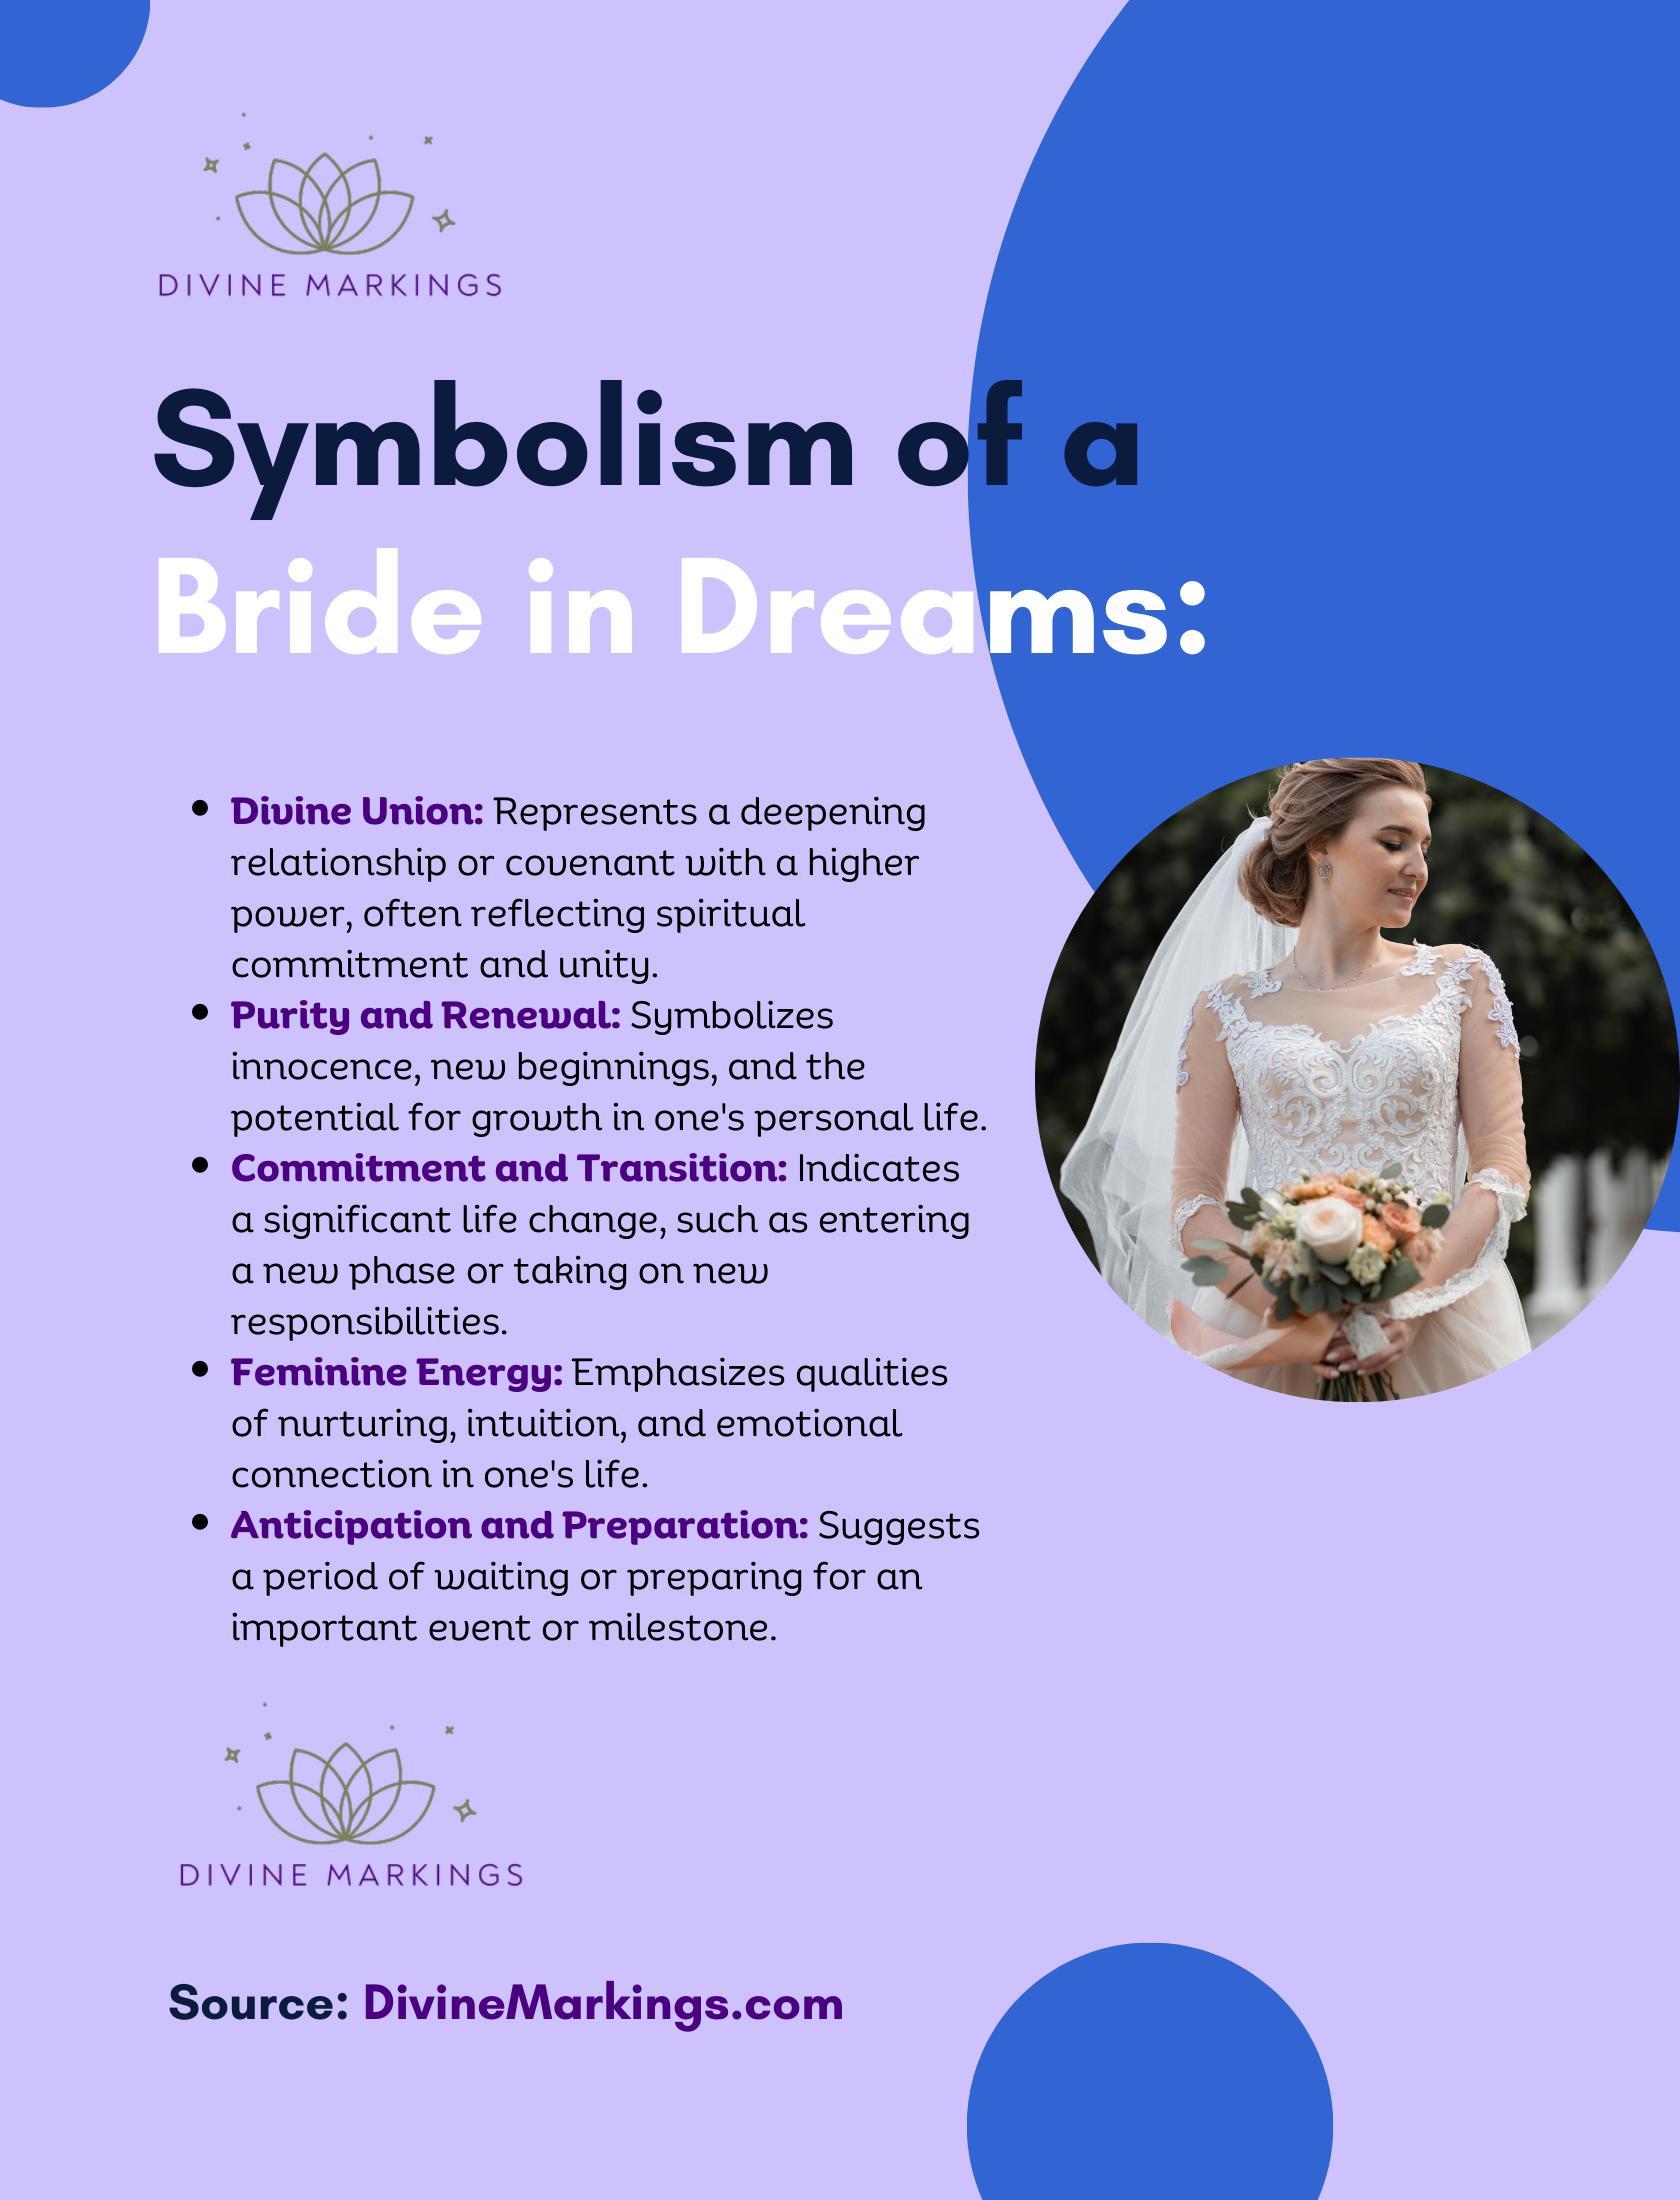 Symbolism of a Bride in Dreams